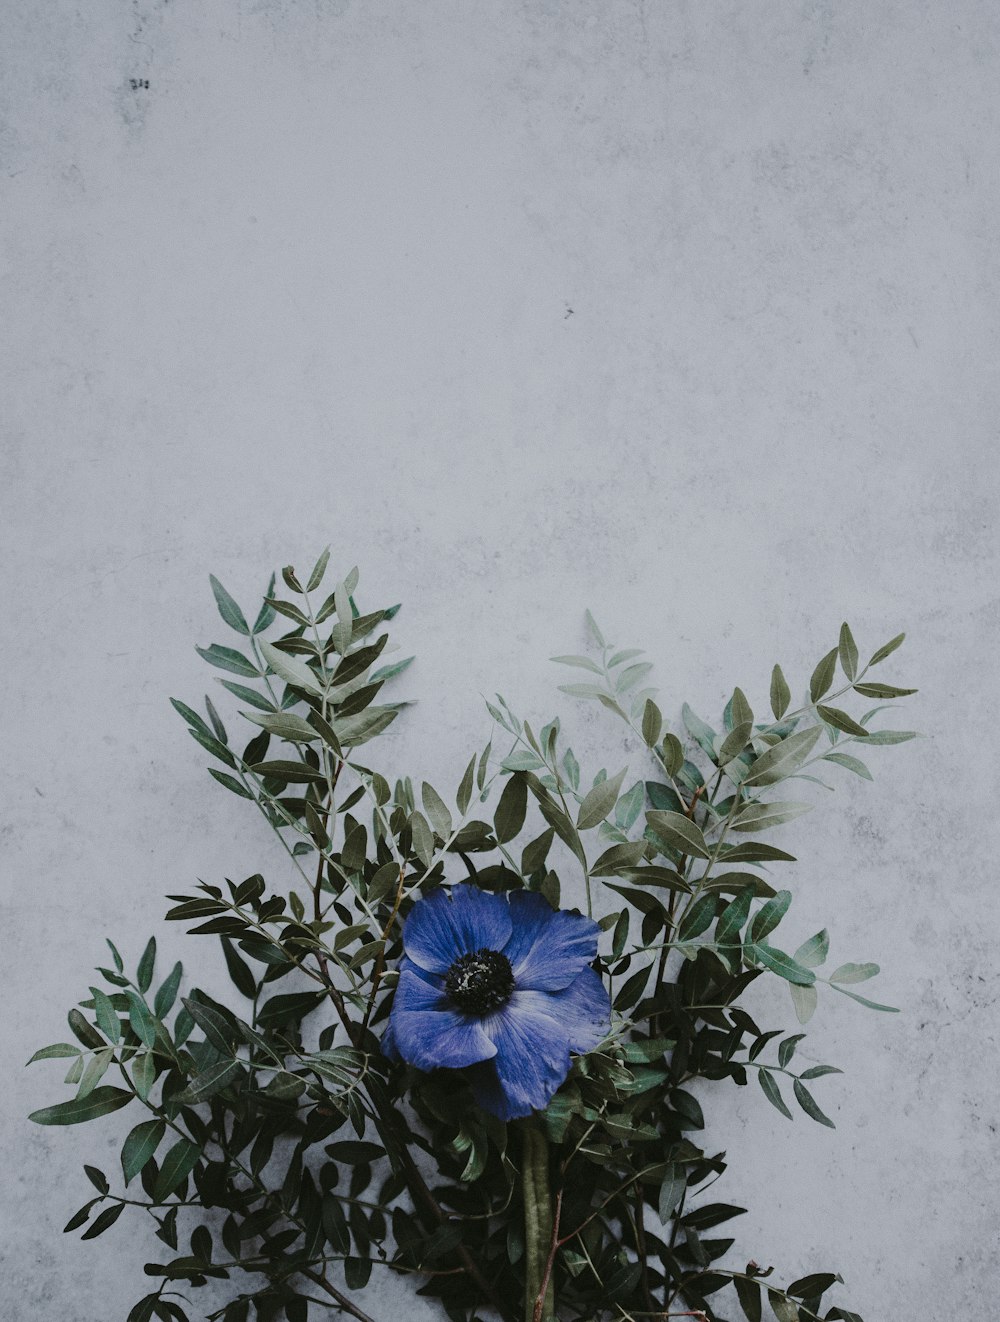 壁の近くに青い花びらの花